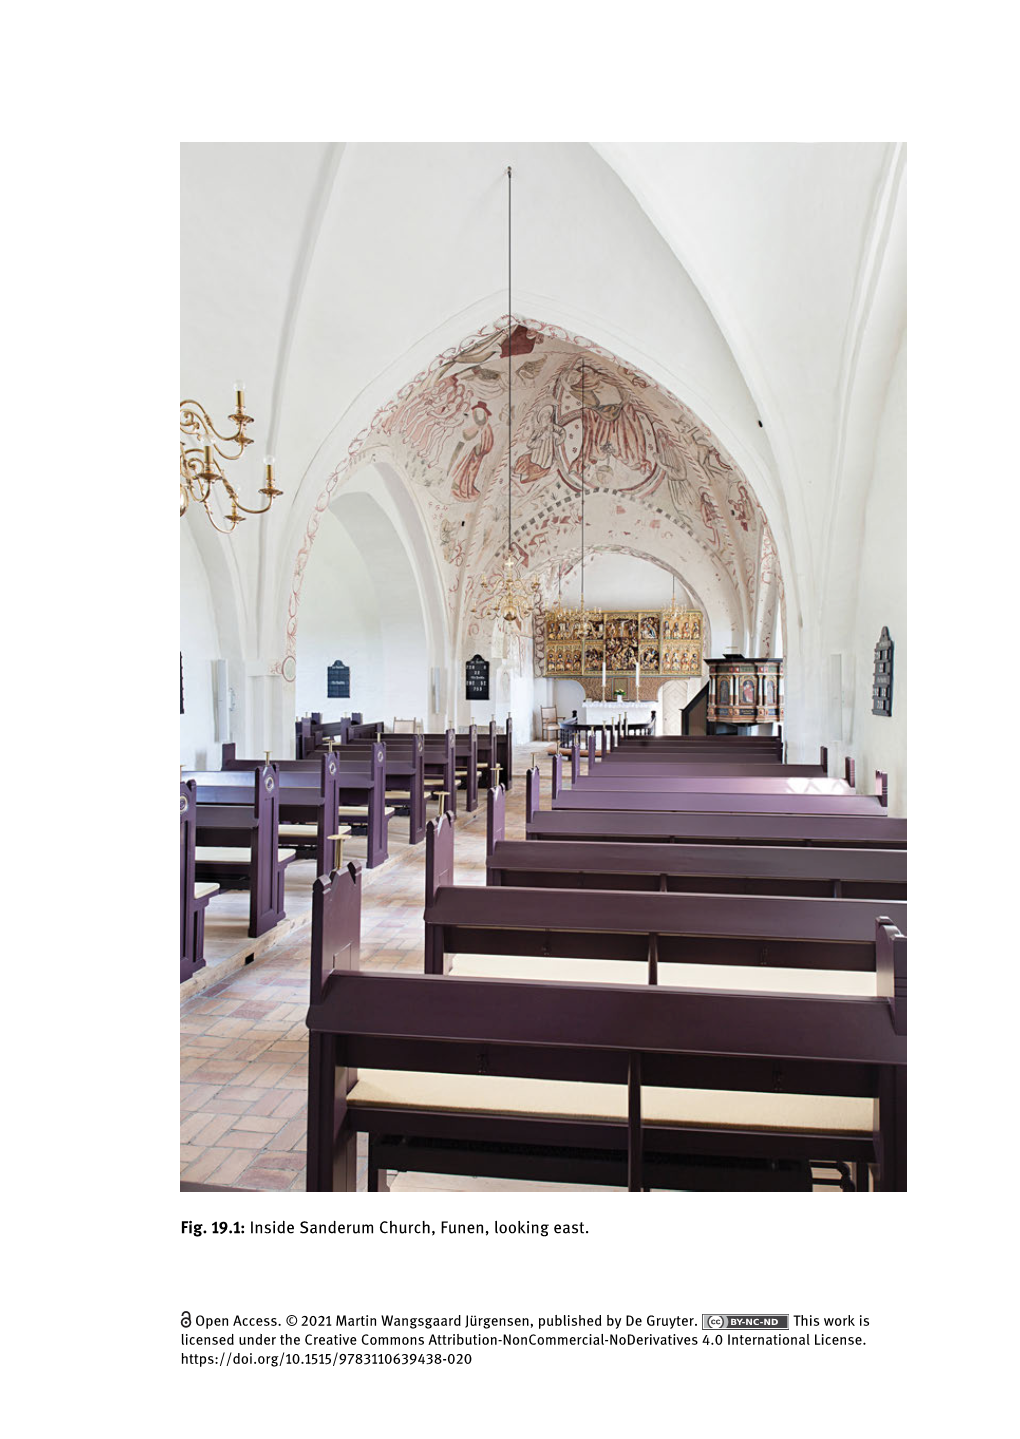 Fig. 19.1: Inside Sanderum Church, Funen, Looking East